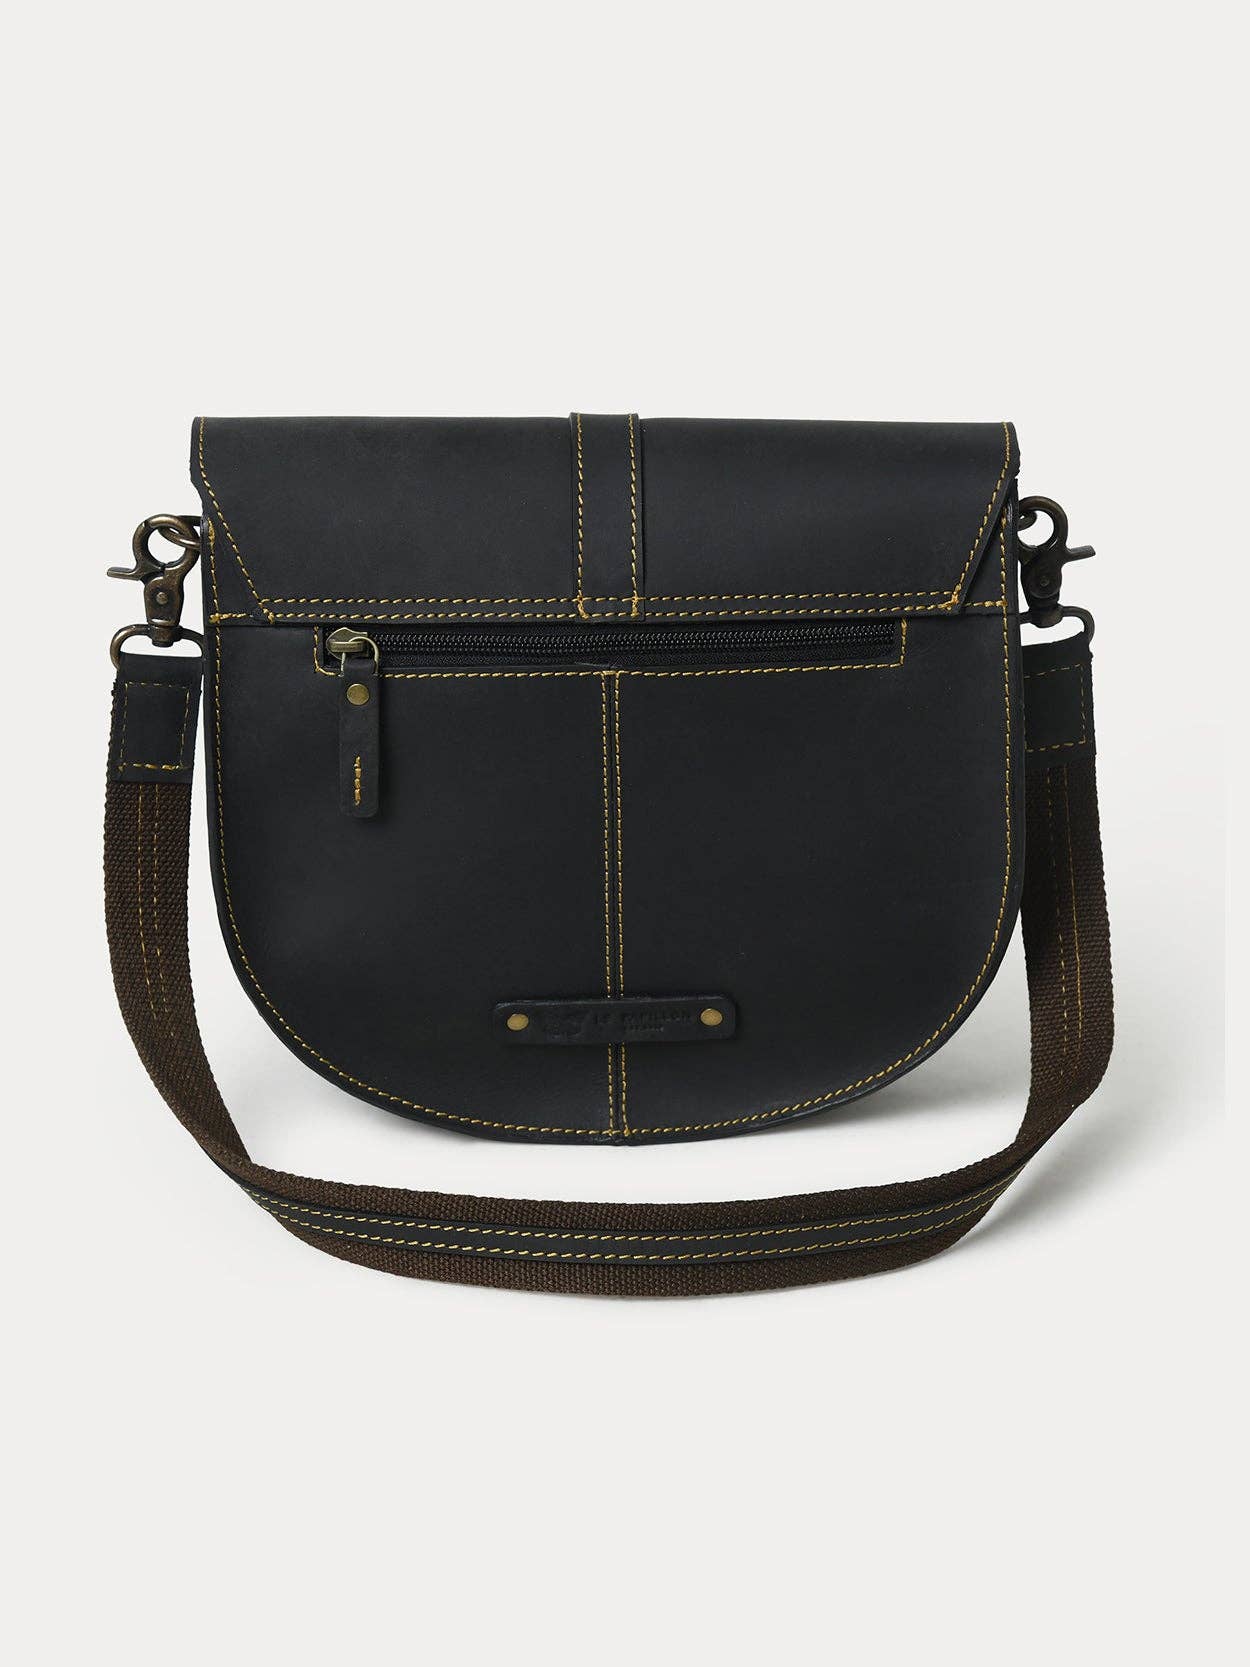 Le Papillon Anna Black Leather Handbag - Simple Good